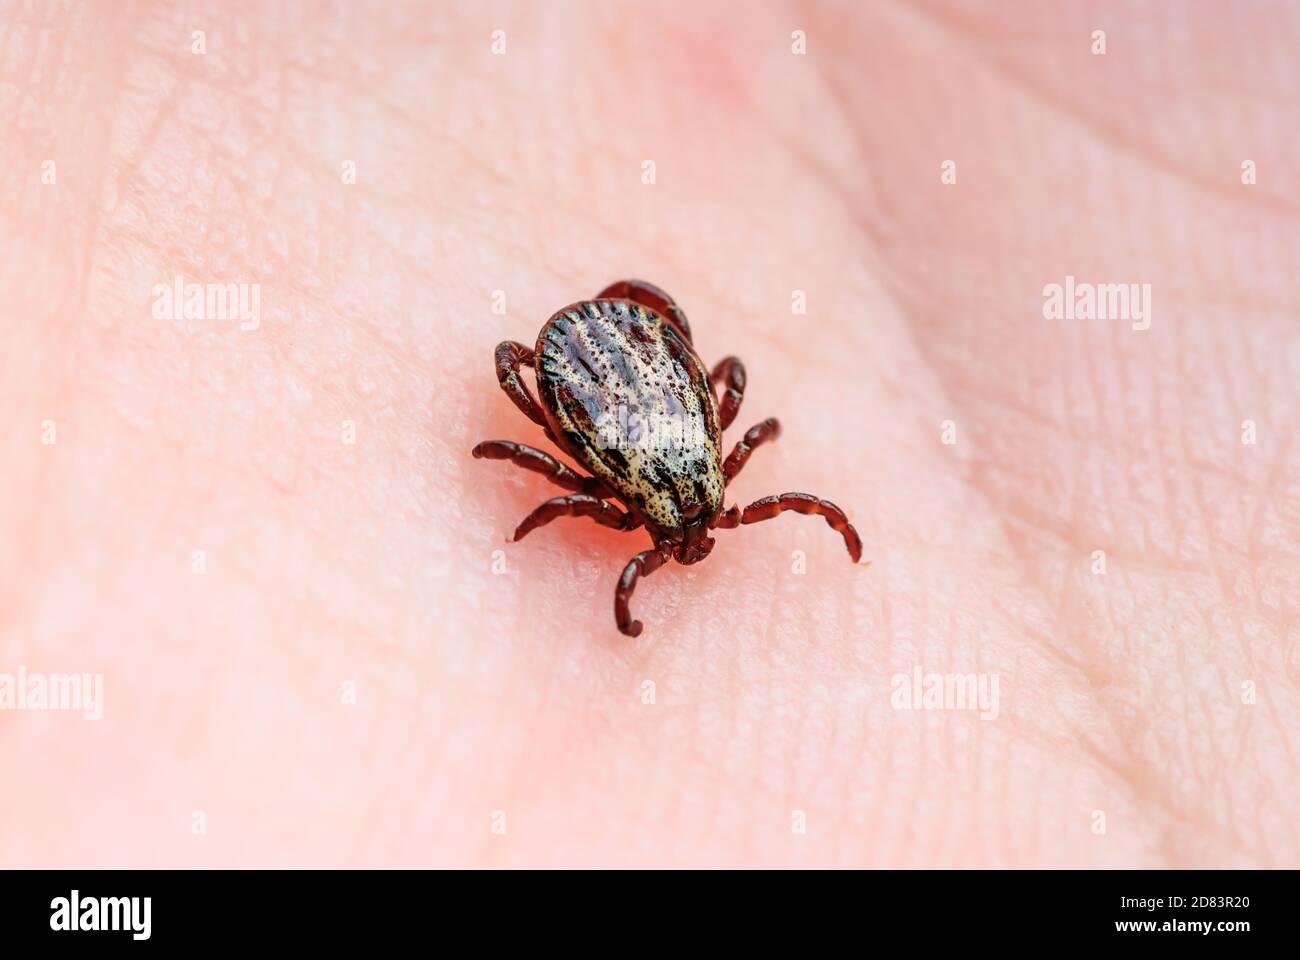 Lyme-Borreliose infizierte Tick Mite Insekt kriechen auf der Haut. Enzephalitis Virus oder Lyme-Borreliose Infektiöse Dermacentor Tick Arachnid Parasiten Close-Up Stockfoto